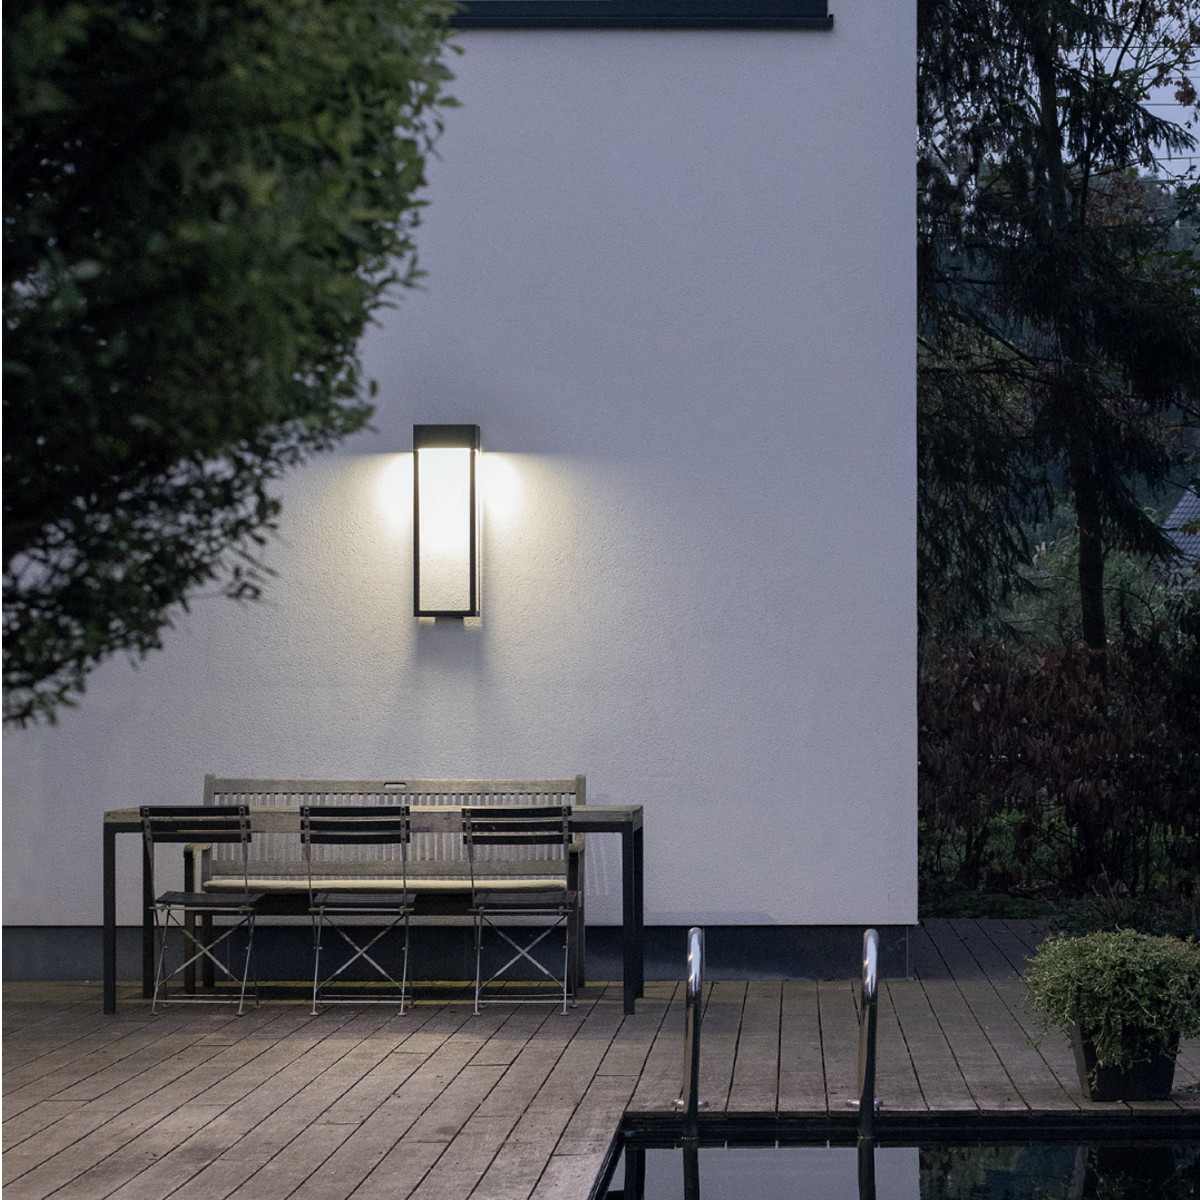 LED Design Up Down Edelstahl Aussen Wand Leuchten Veranda Terrasse Garten Lampen